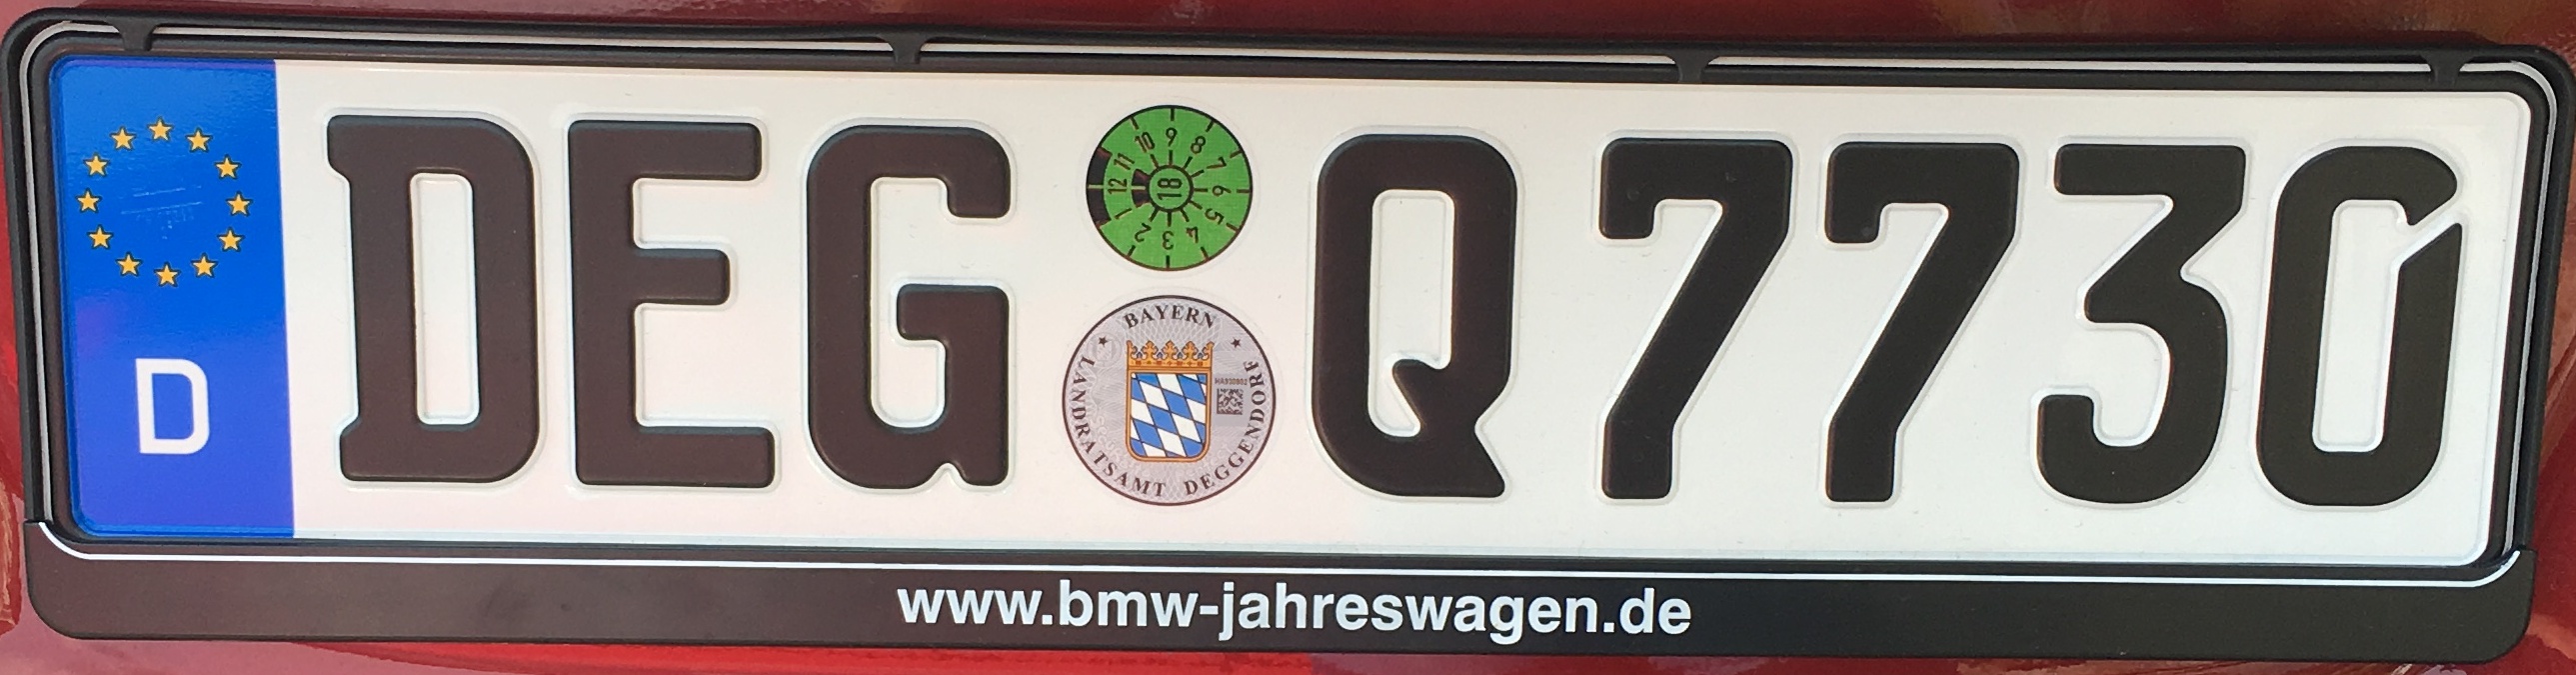 Registrační značky Německo - DEG - Deggendorf, foto: vlastní